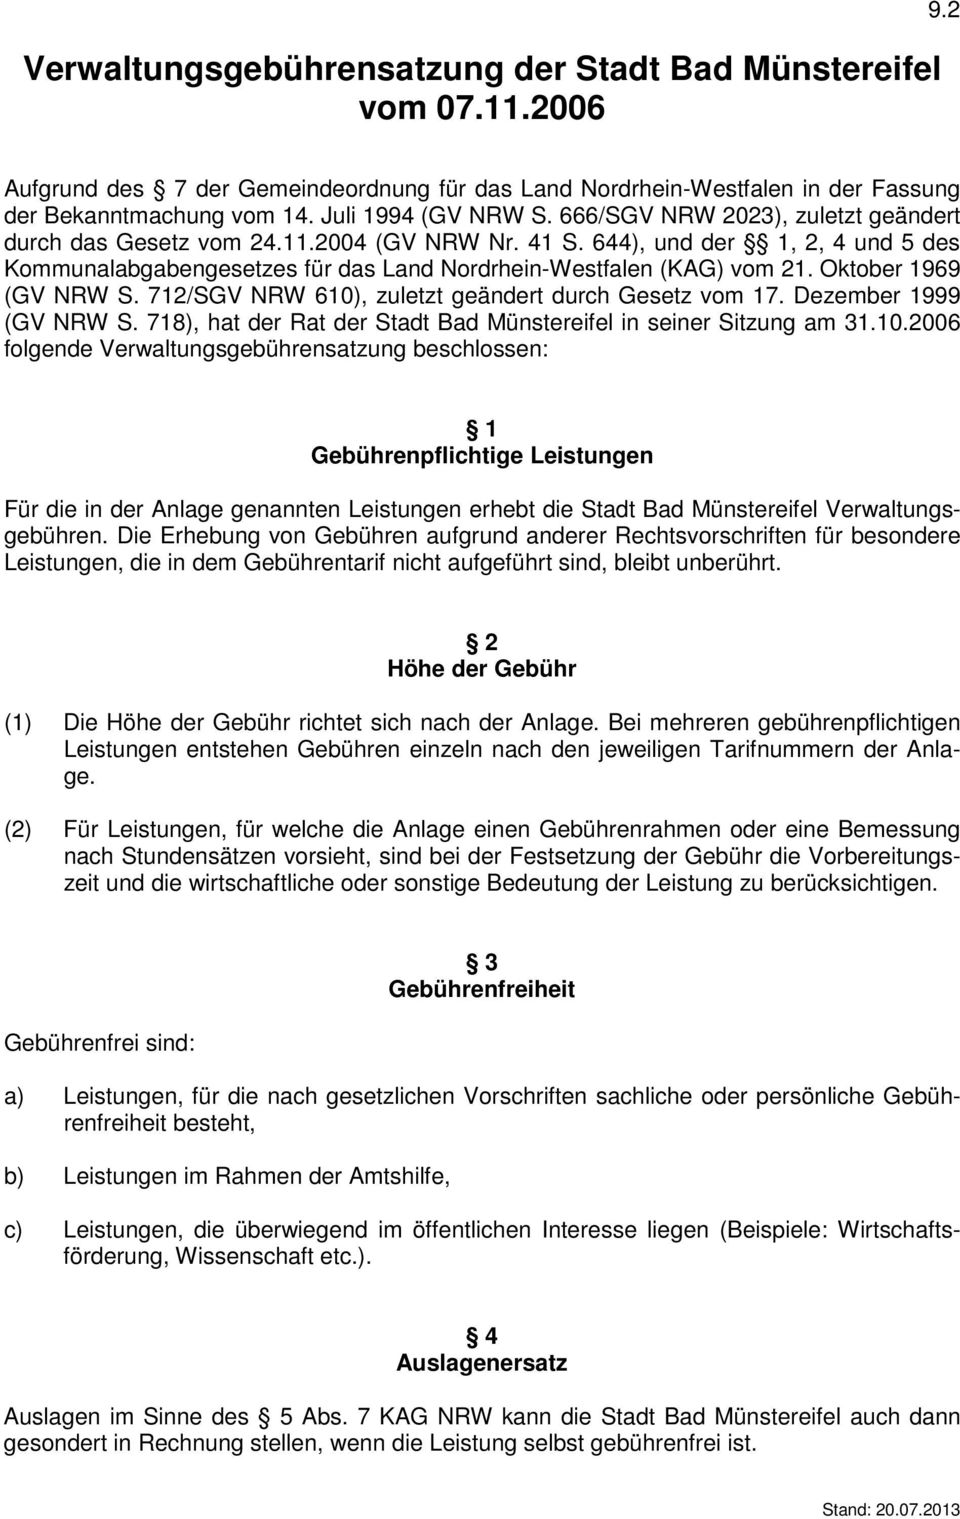 644), und der 1, 2, 4 und 5 des Kommunalabgabengesetzes für das Land Nordrhein-Westfalen (KAG) vom 21. Oktober 1969 (GV NRW S. 712/SGV NRW 610), zuletzt geändert durch Gesetz vom 17.